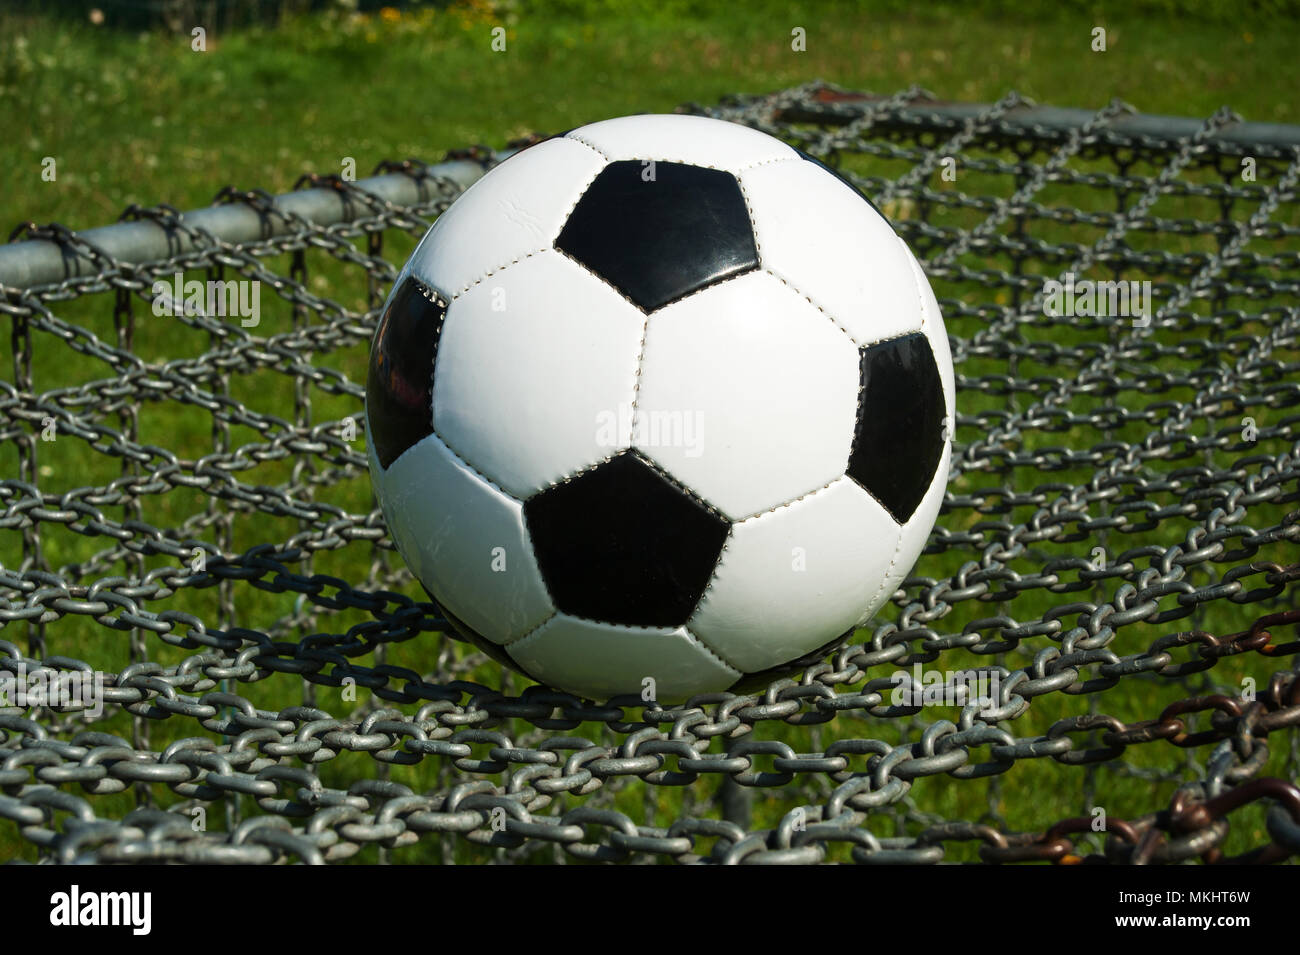 Pallone da calcio classico bianco e nero sulla parte superiore di una catena obiettivo in estate all'aperto Foto Stock